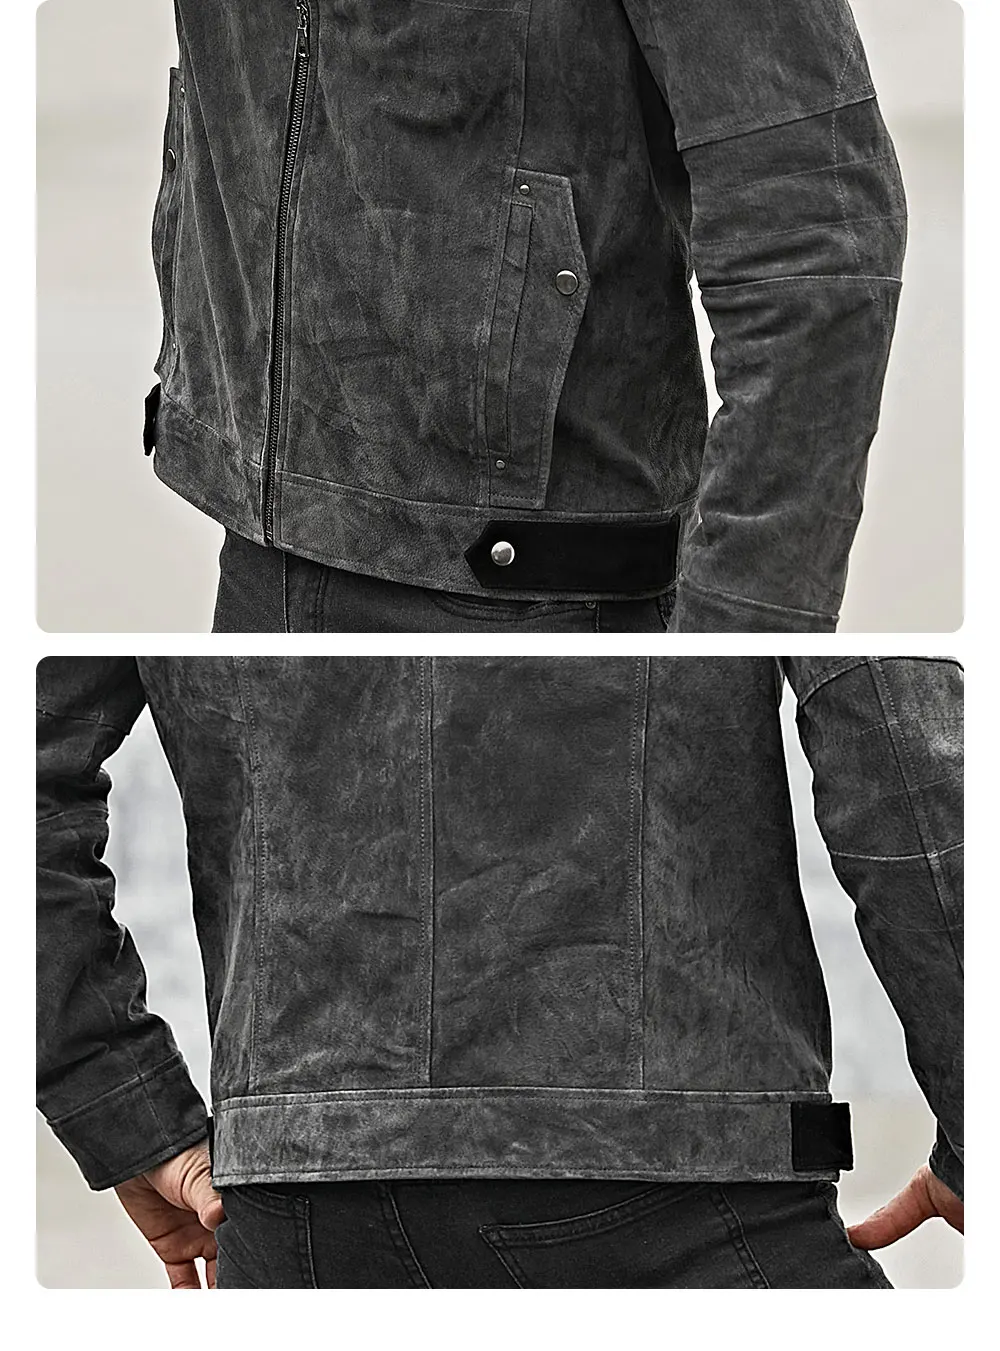 Kожаная куртка мужская байкерская куртка FLAVOR, пальто из натуральной кожи со стоячим воротником, тренчкот из свиной шкуры серого цвета